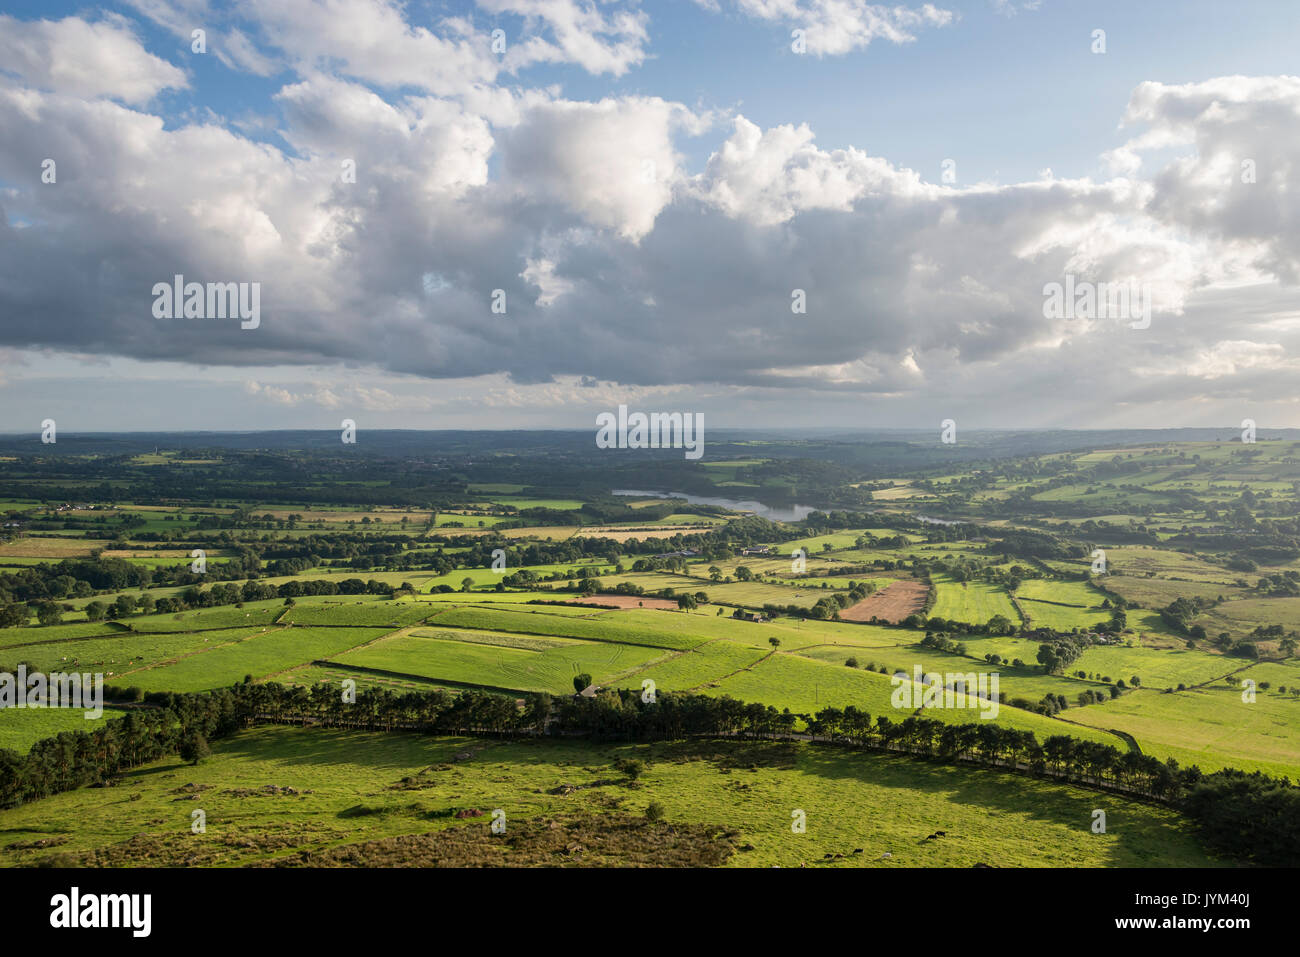 Belle vue sur la campagne de Staffordshire Hen Cloud près de cafards, le Peak District. Tittesworth réservoir entouré de champs verts. Banque D'Images